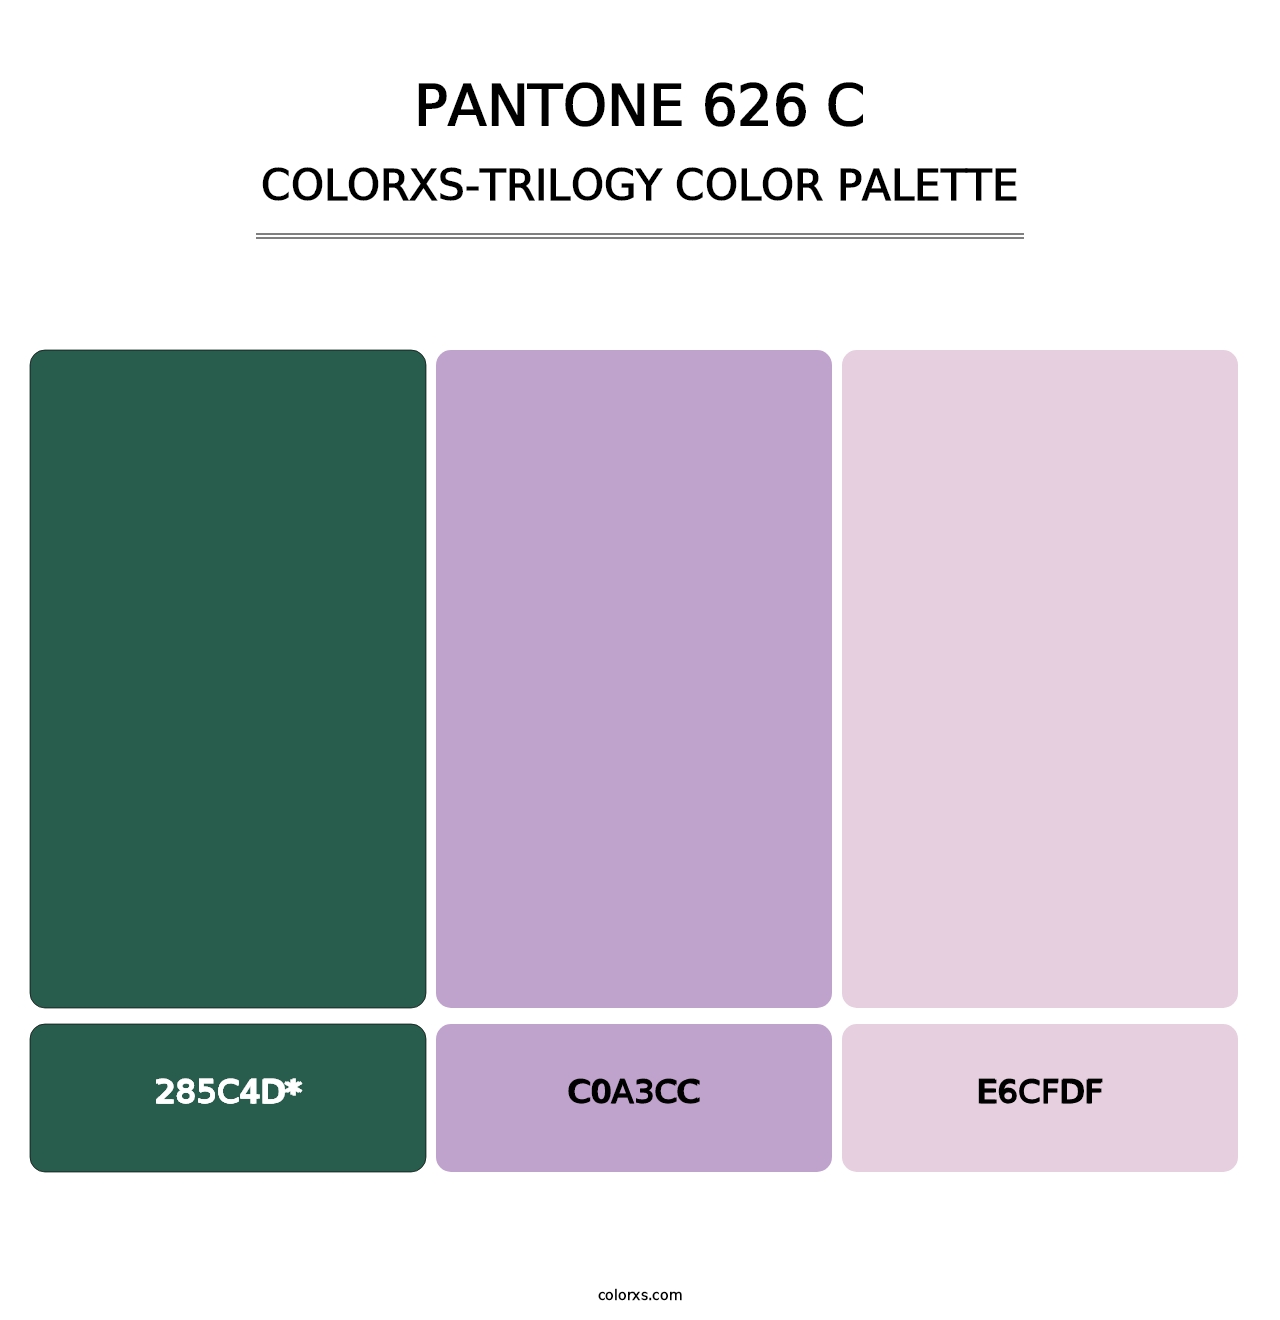 PANTONE 626 C - Colorxs Trilogy Palette